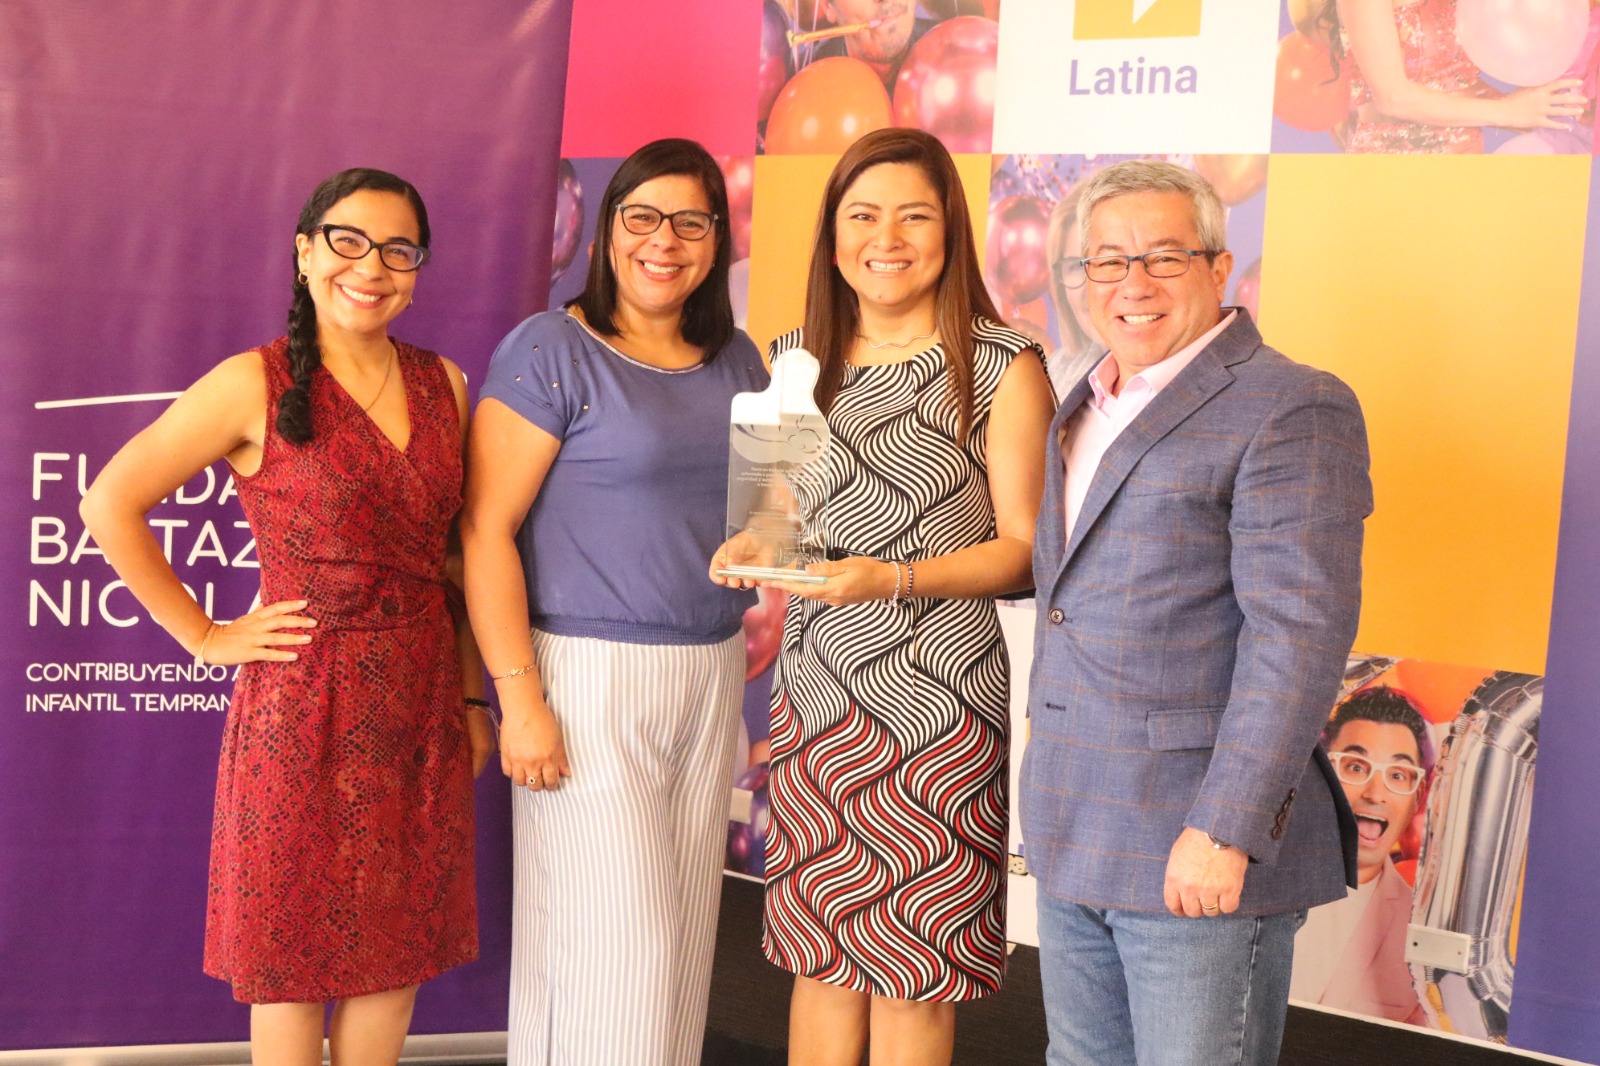 Latina recibe reconocimiento de la Fundación Baltaza y Nicolás